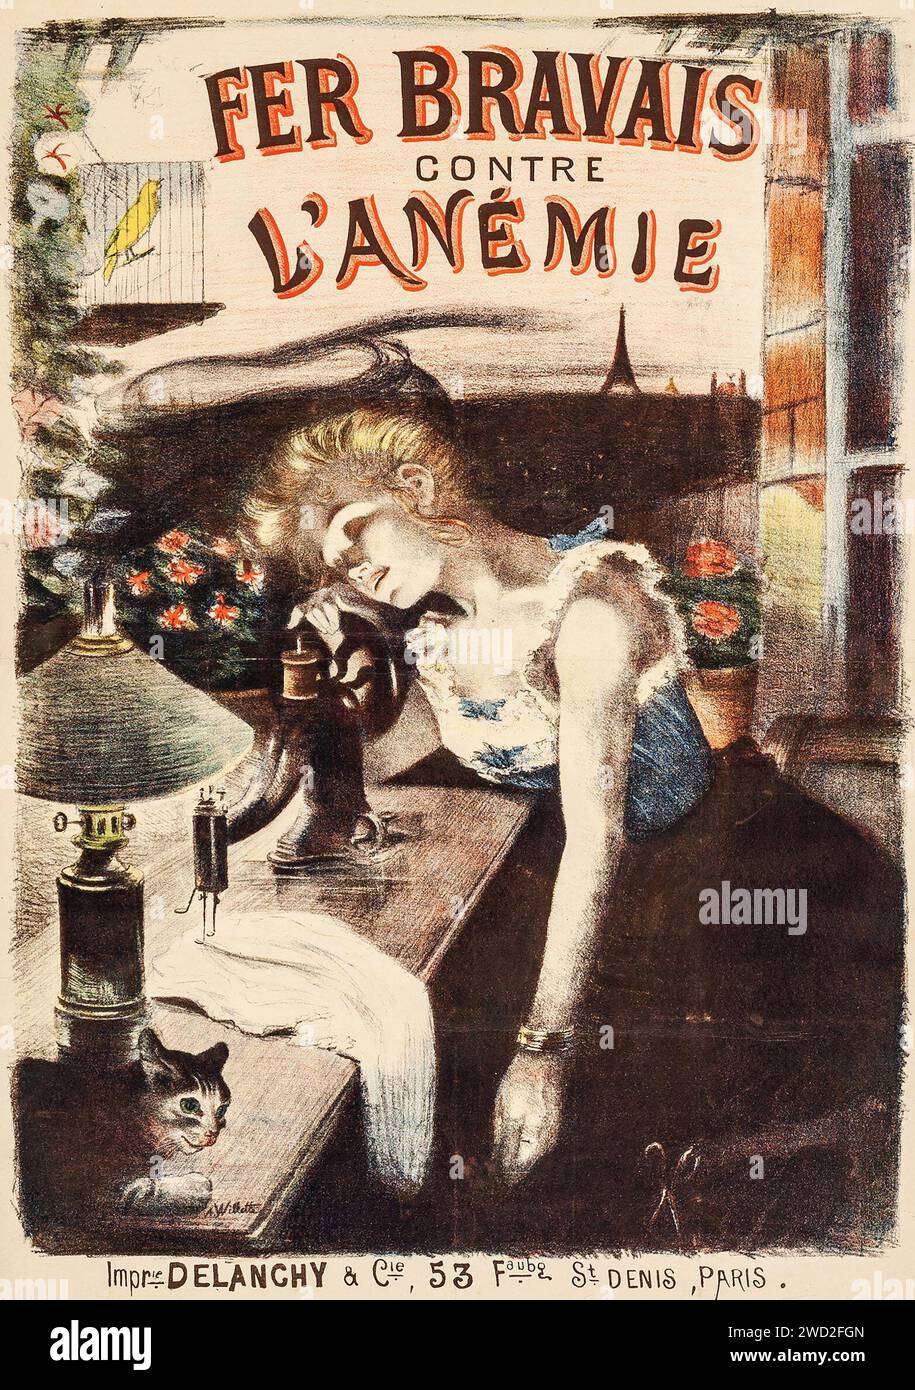 Fer Bravais Contre l'Anemie (1898) poster pubblicitario francese - Adolphe Willette artwork - poster per una medicina presa per trattare l'anemia - ragazza che dorme alla macchina da cucire Foto Stock